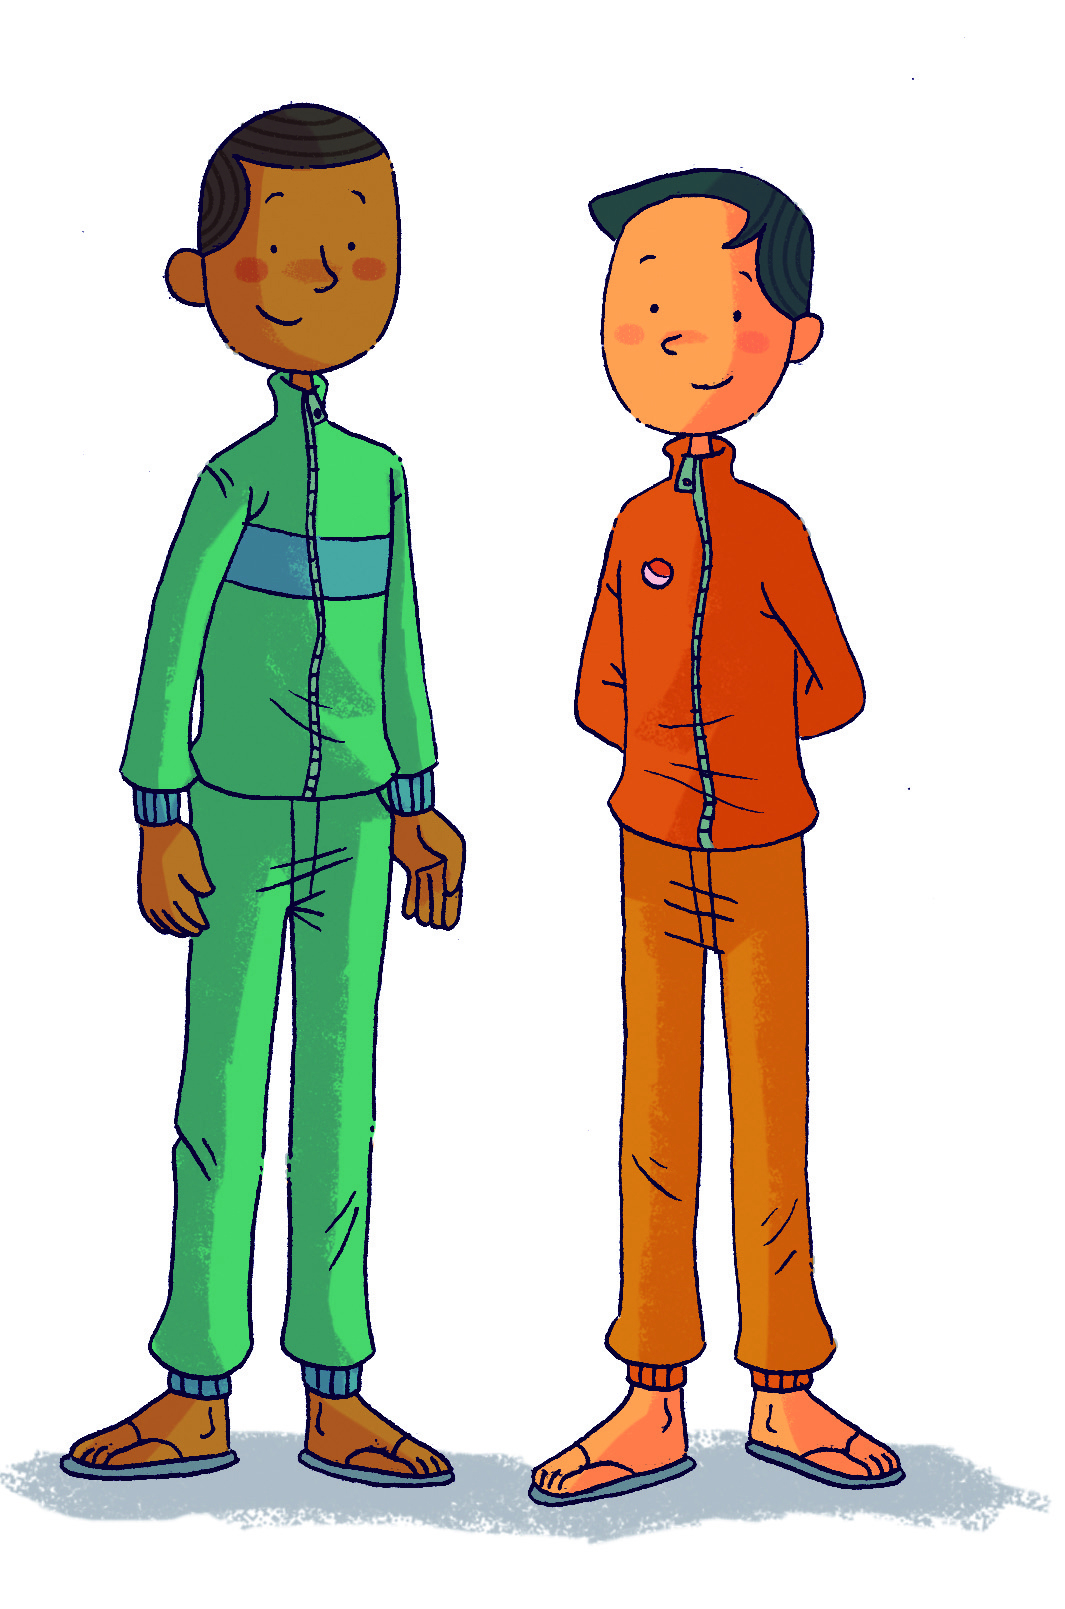 Ilustração. Homem de cabelo castanho e agasalho verde. Ao lado, homem mais baixo de cabelo preto e agasalho laranja.